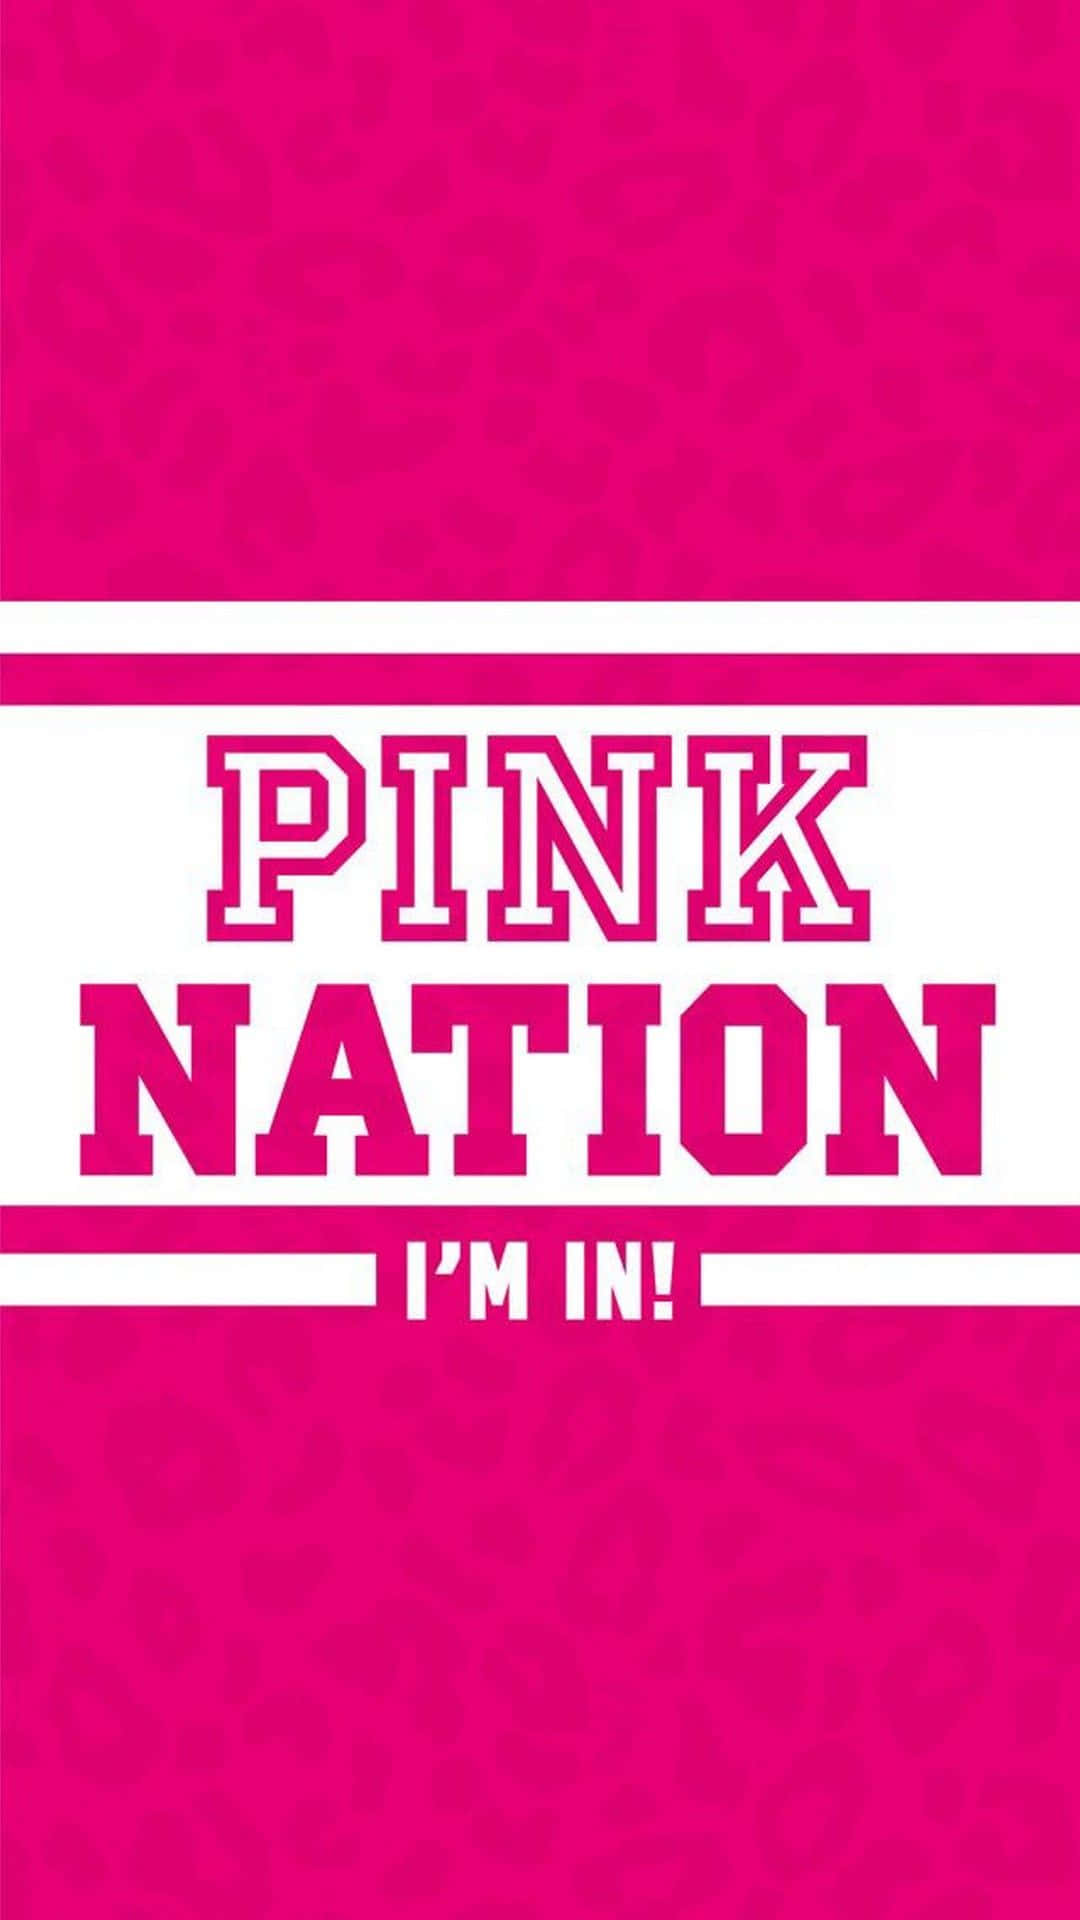 Werdensie Teil Von Pink Nation Und Schließen Sie Sich Der Lifestyle-revolution An. Wallpaper